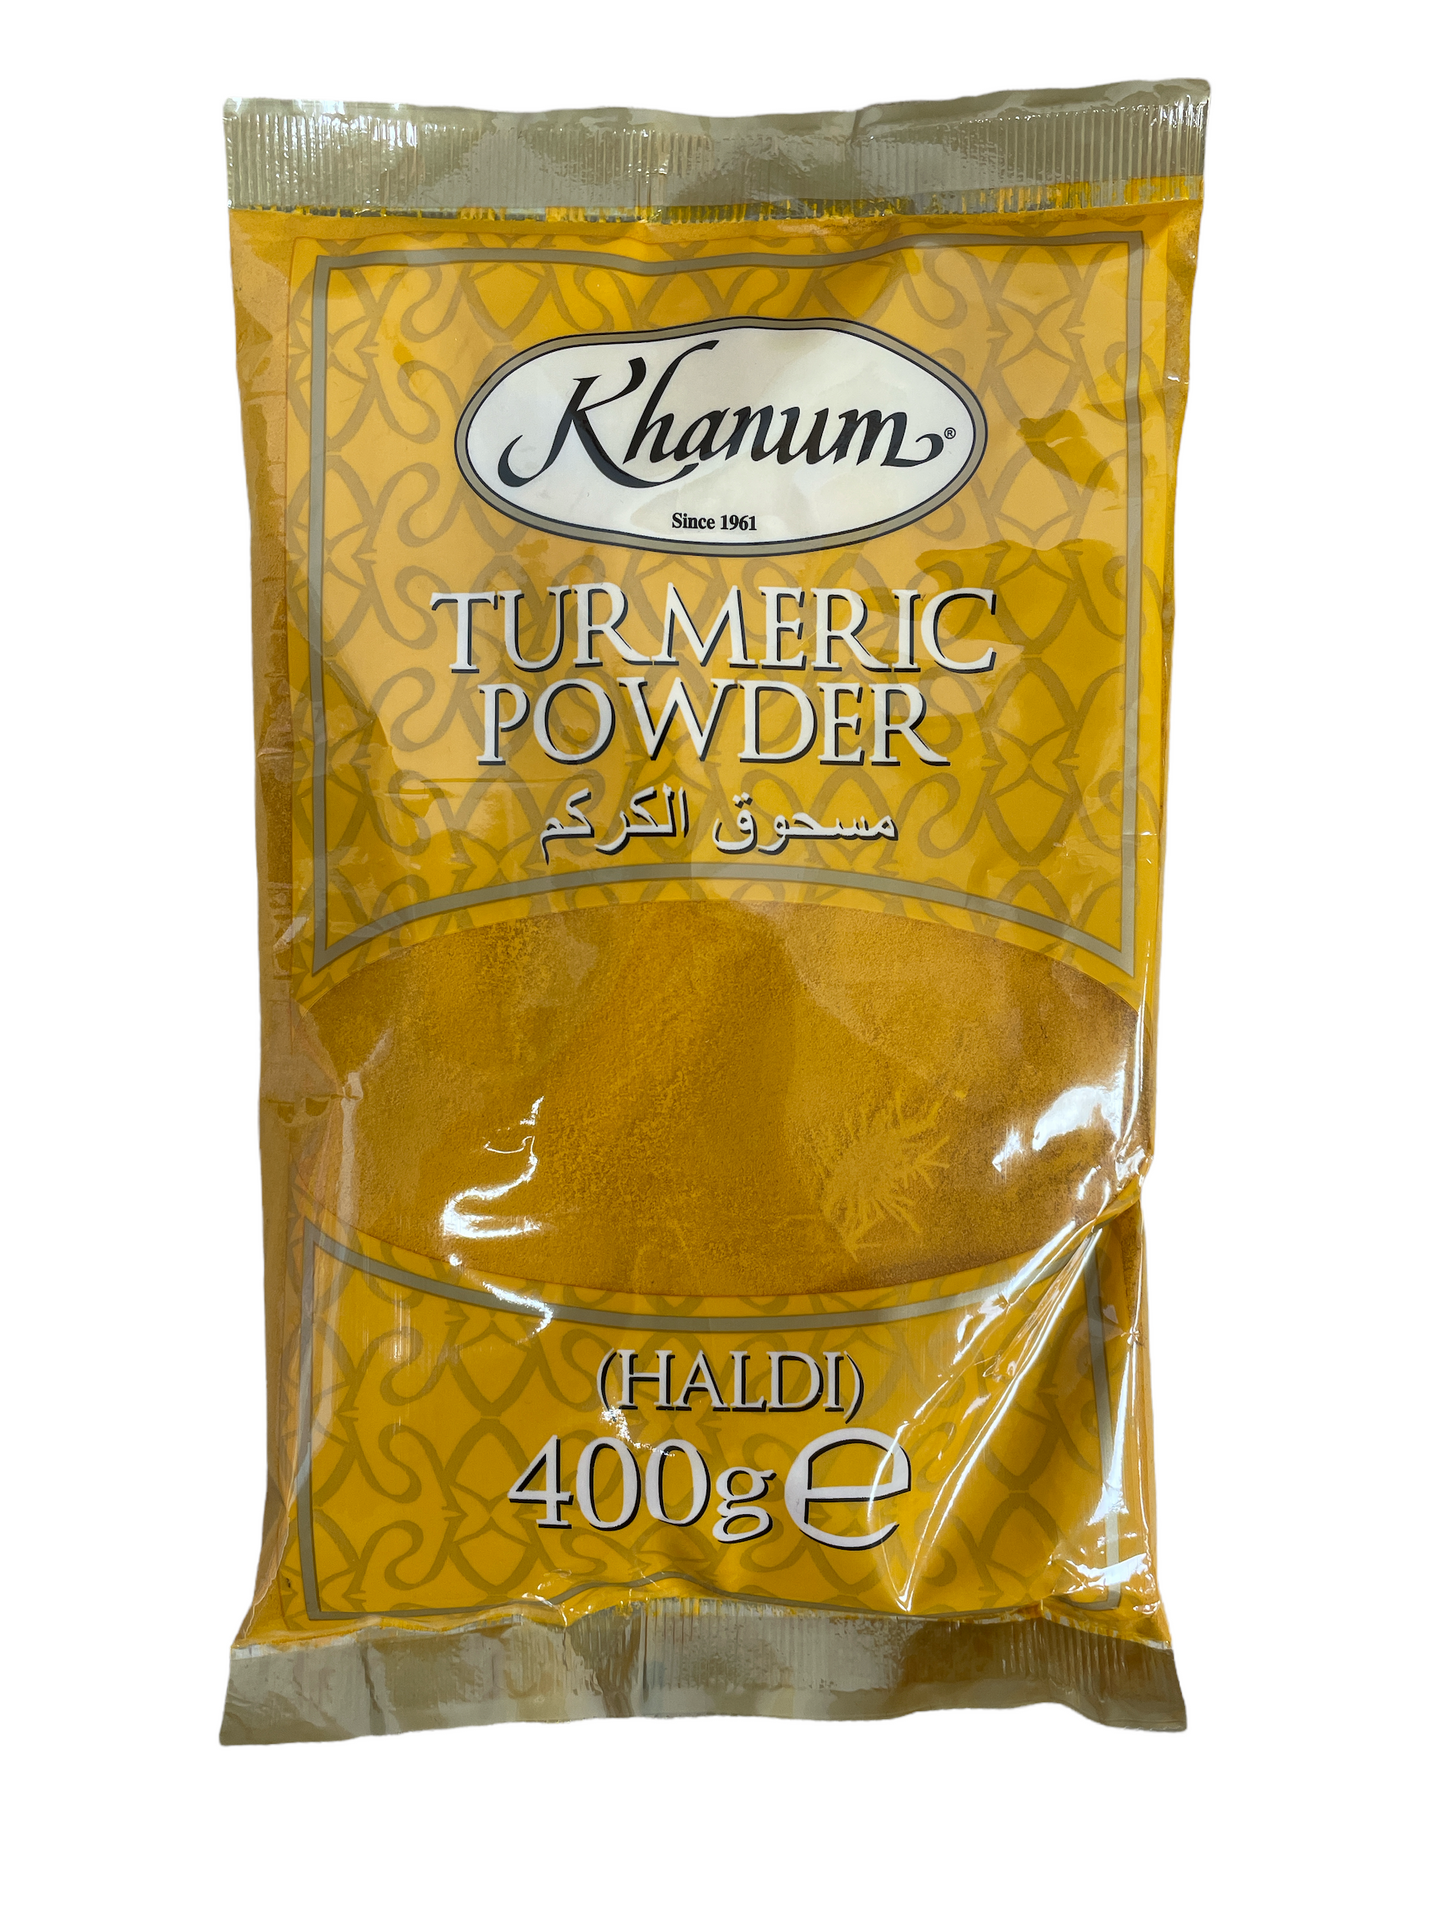 Khanum Turmeric Powder (Haldi) 400g